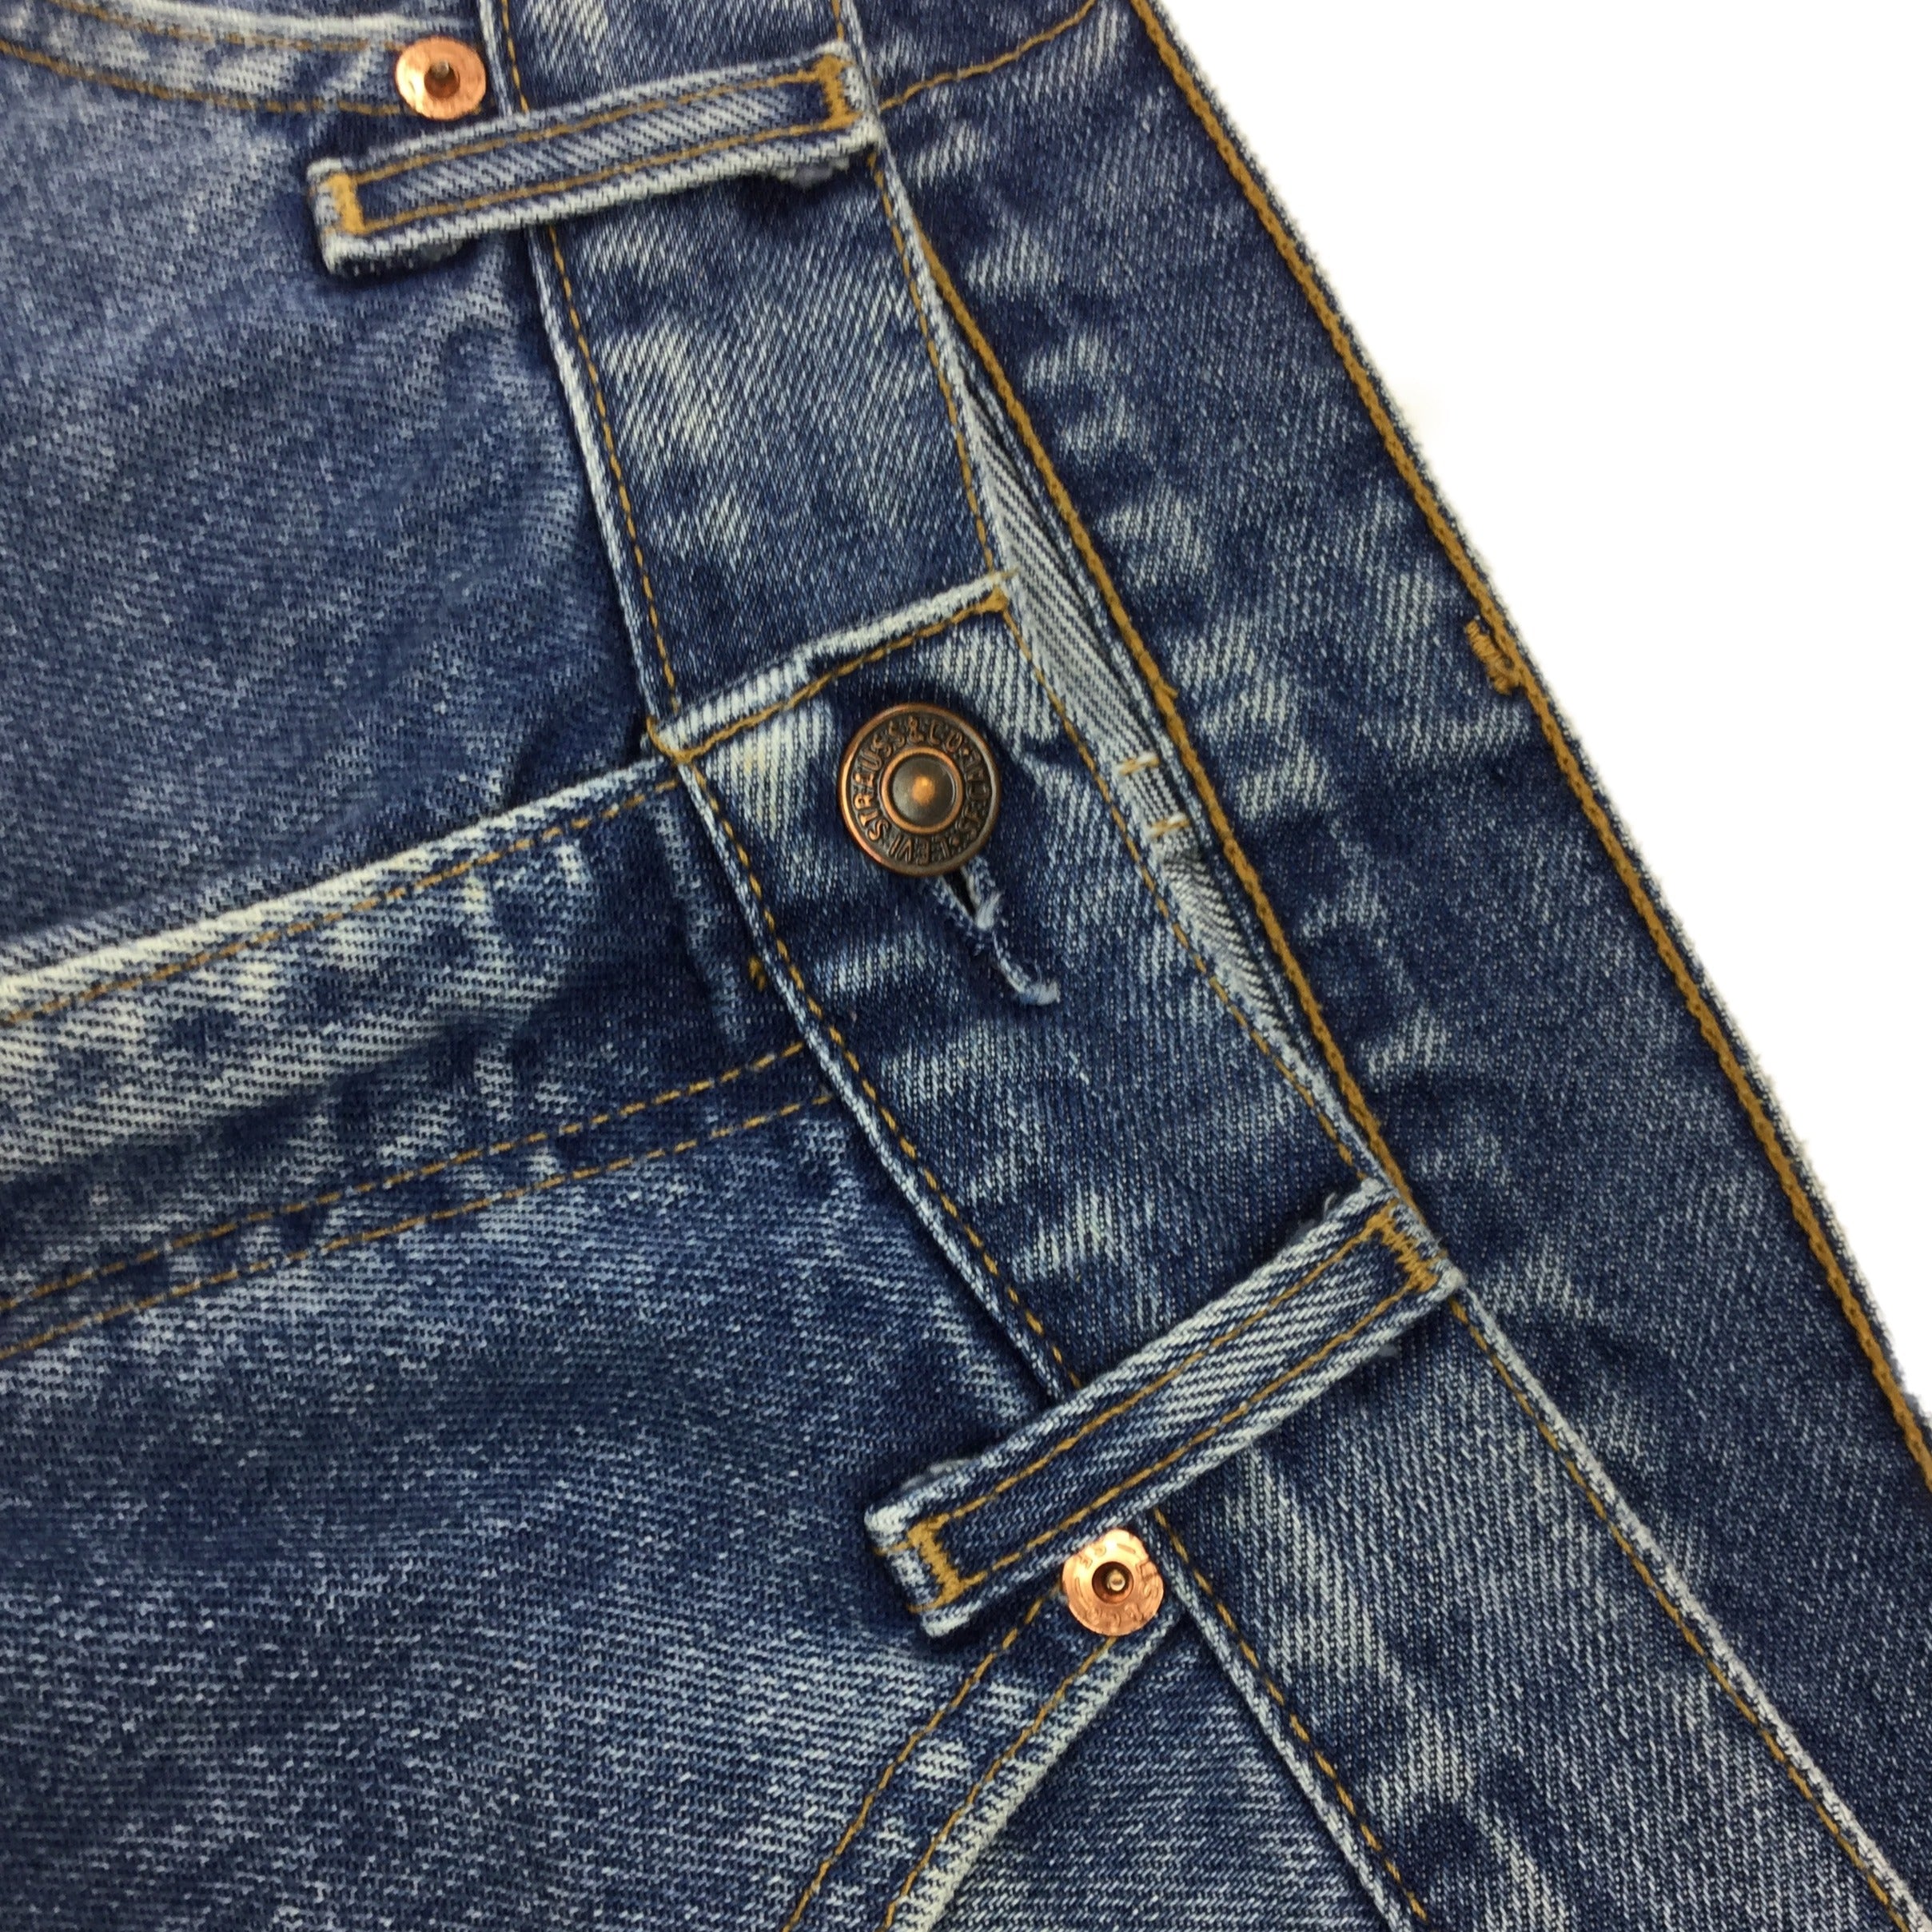 Rare Vintage Levi's 521 Jeans - Restorecph